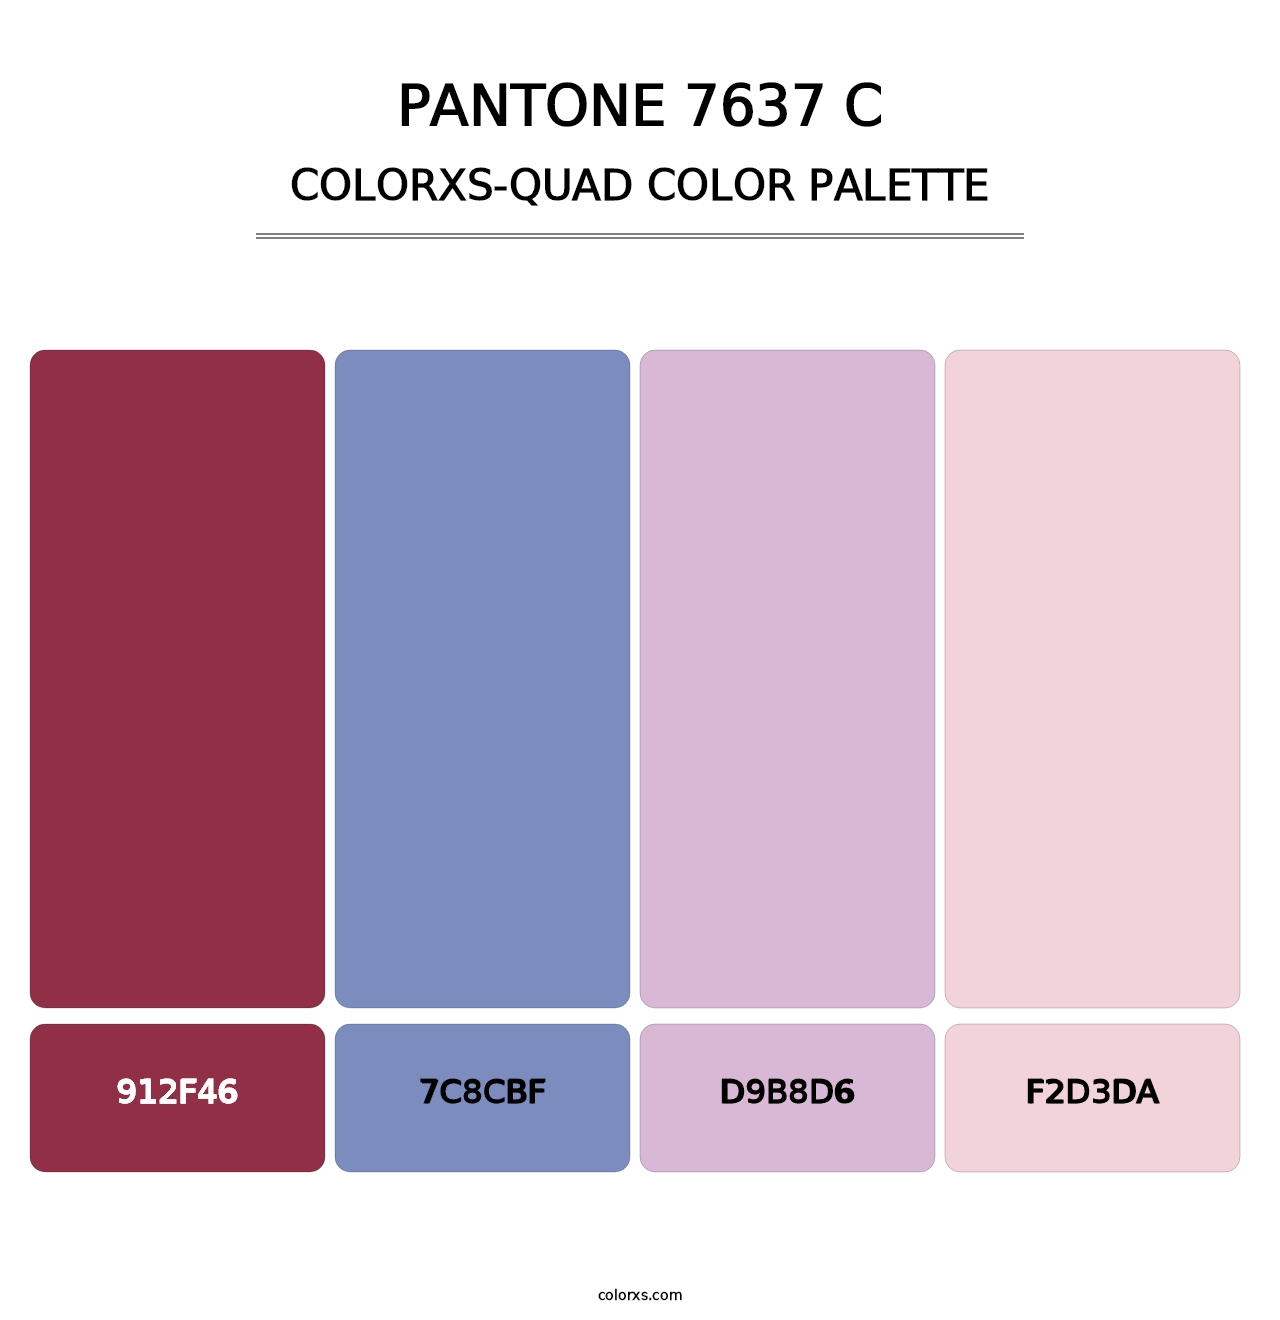 PANTONE 7637 C - Colorxs Quad Palette